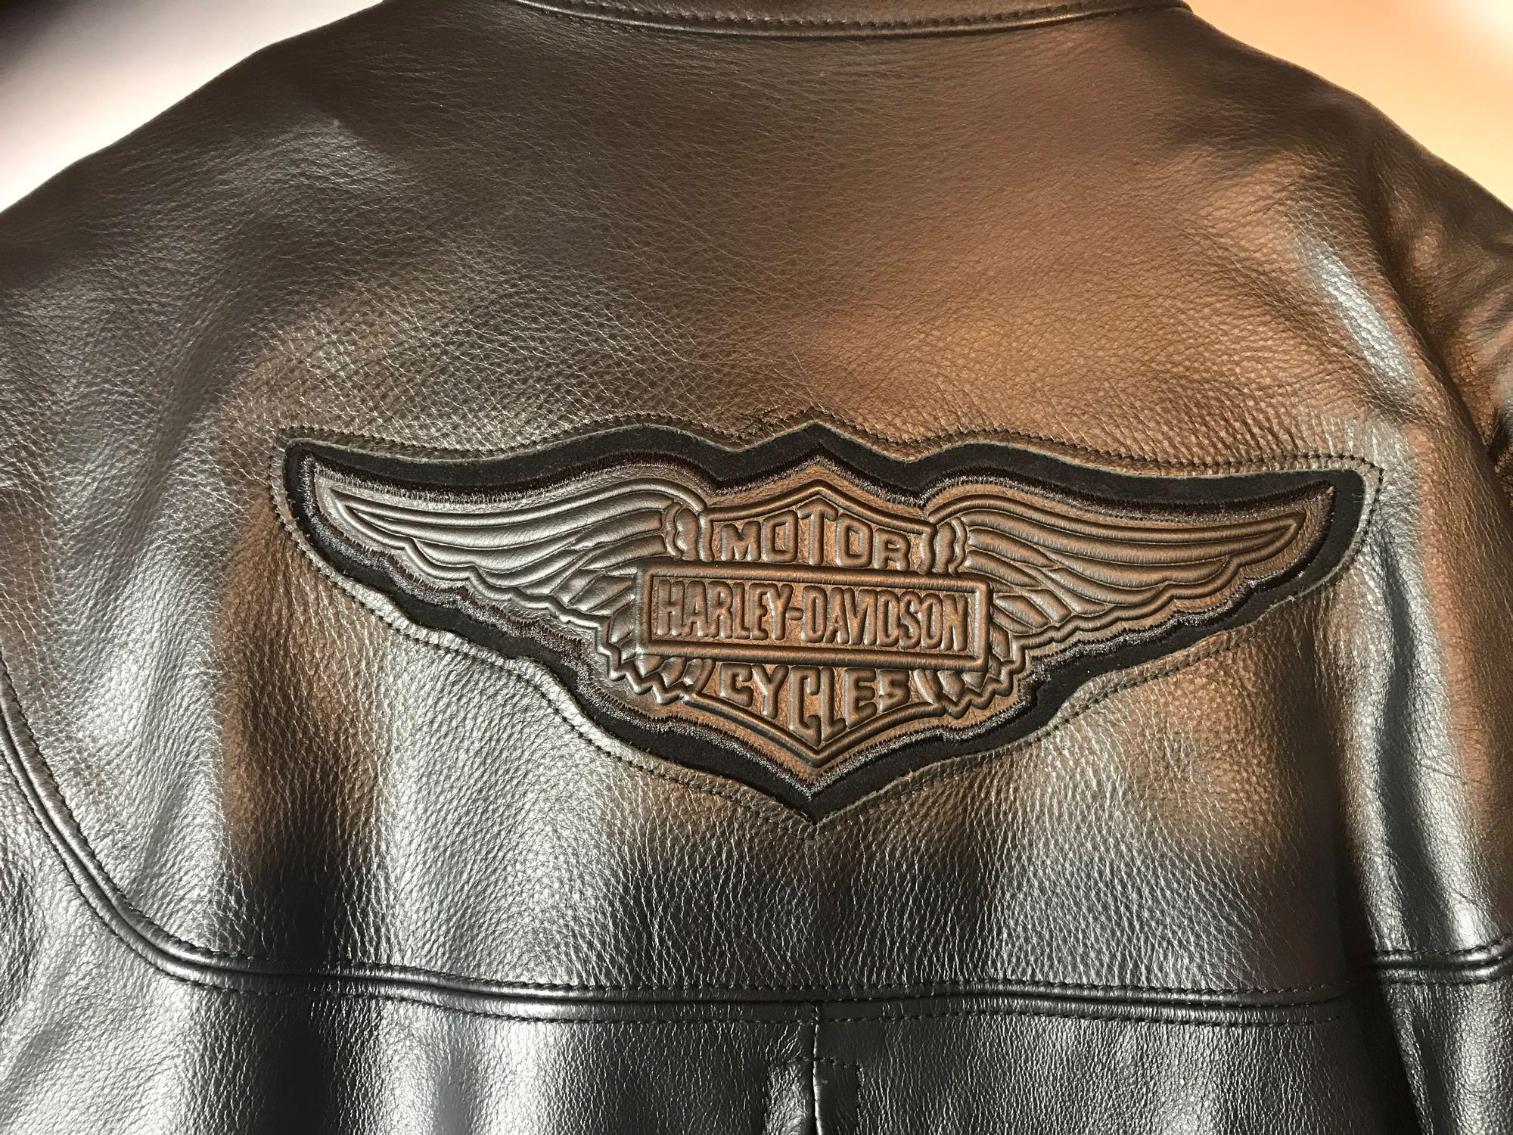 Image for Vintage Harley Davidson Leather Jacket - Made in USA